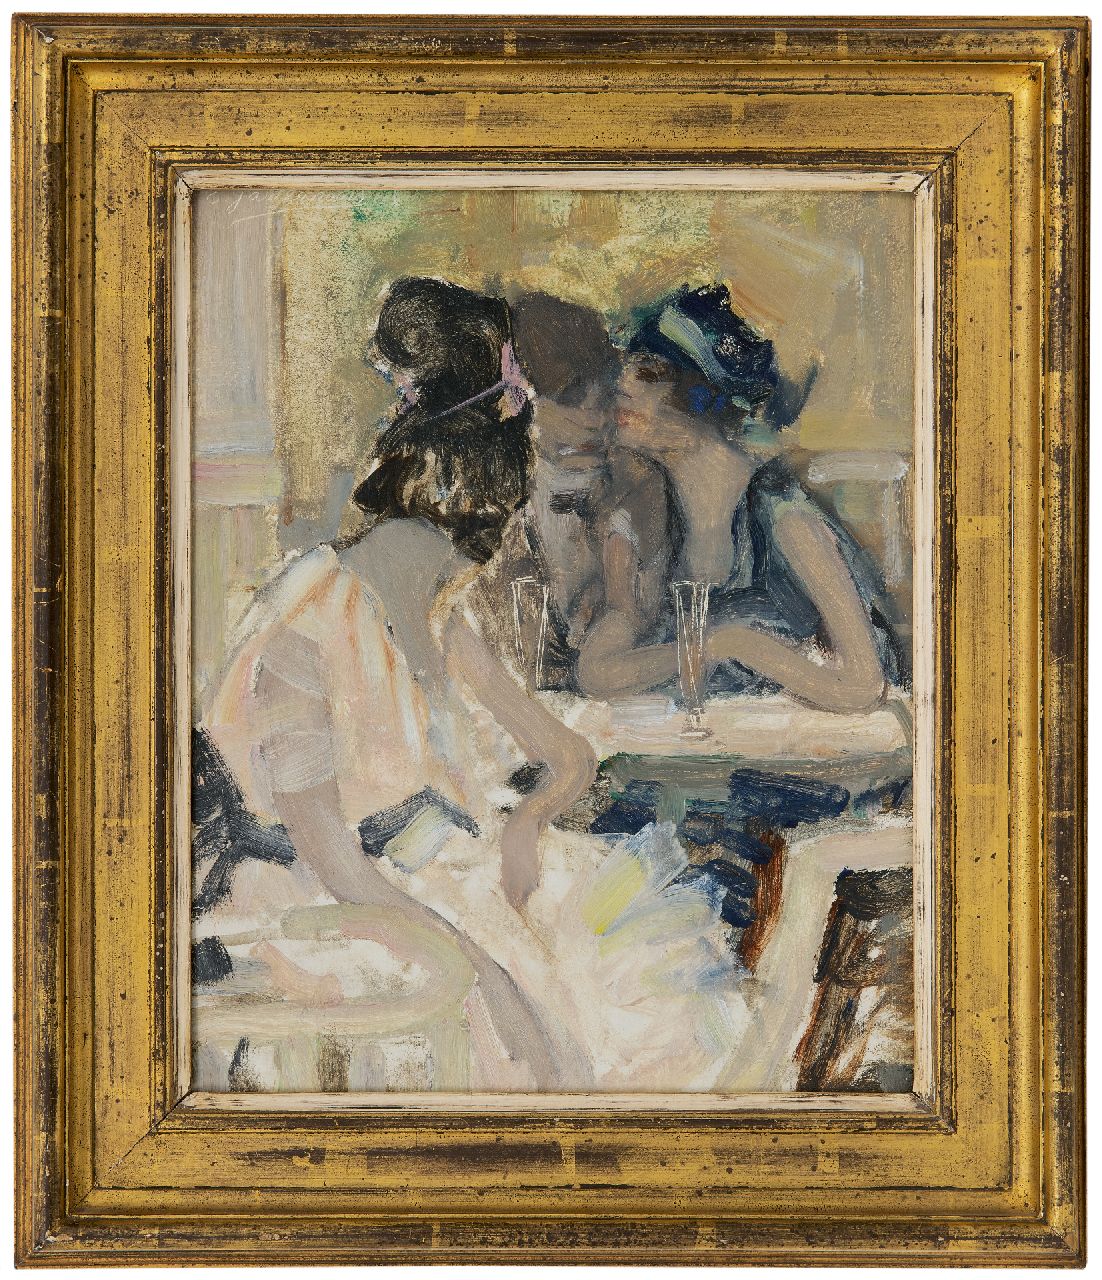 Gastemans E.  | Emile Gastemans | Schilderijen te koop aangeboden | Caféscène, olieverf op board 28,5 x 22,3 cm, gesigneerd linksboven